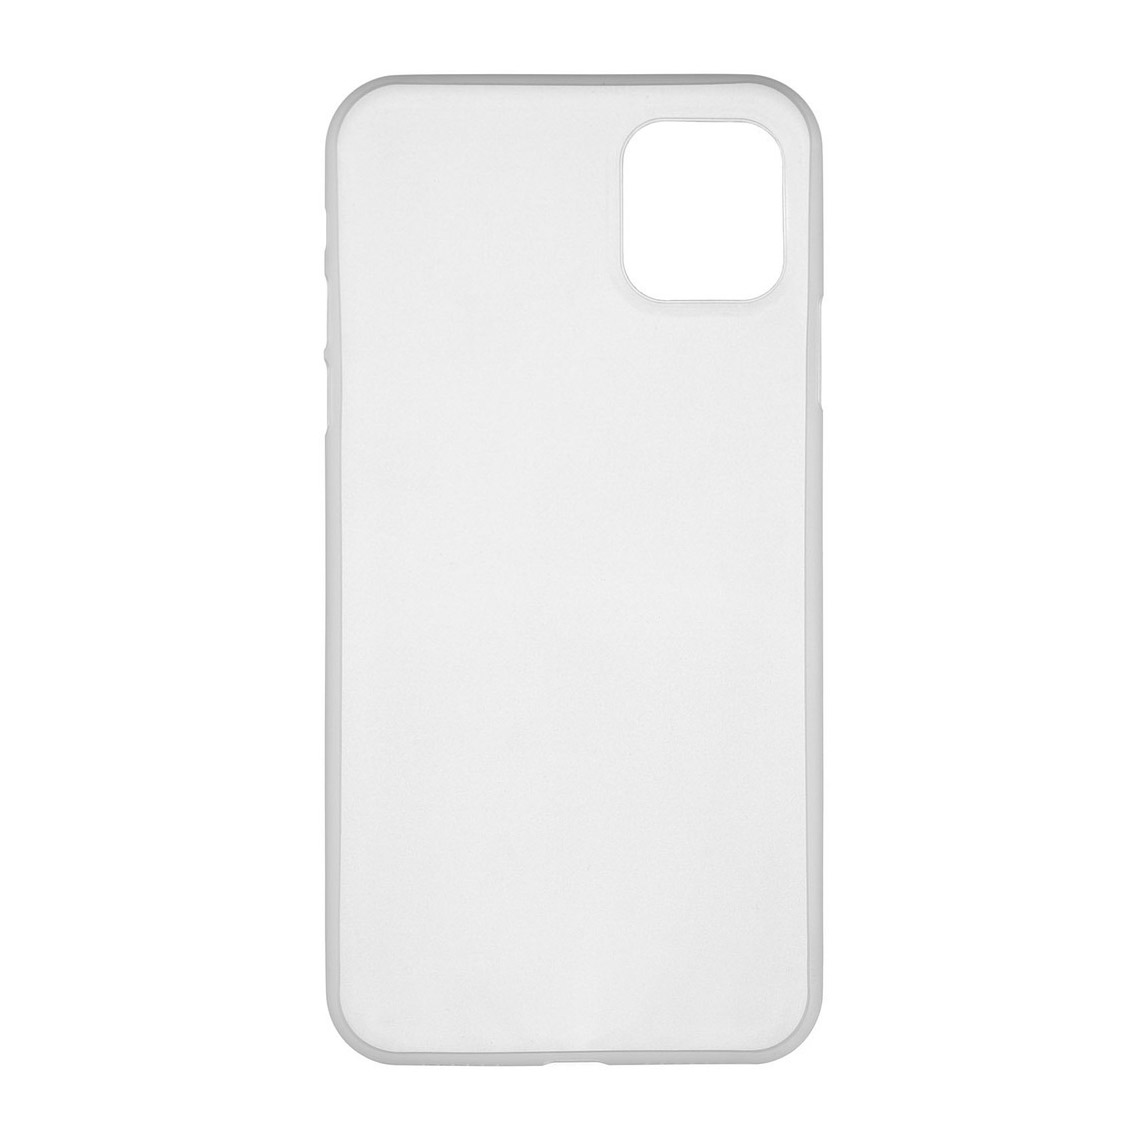 Чехол uBear Super Slim Case для Apple iPhone 11, полупрозрачный - фото 1